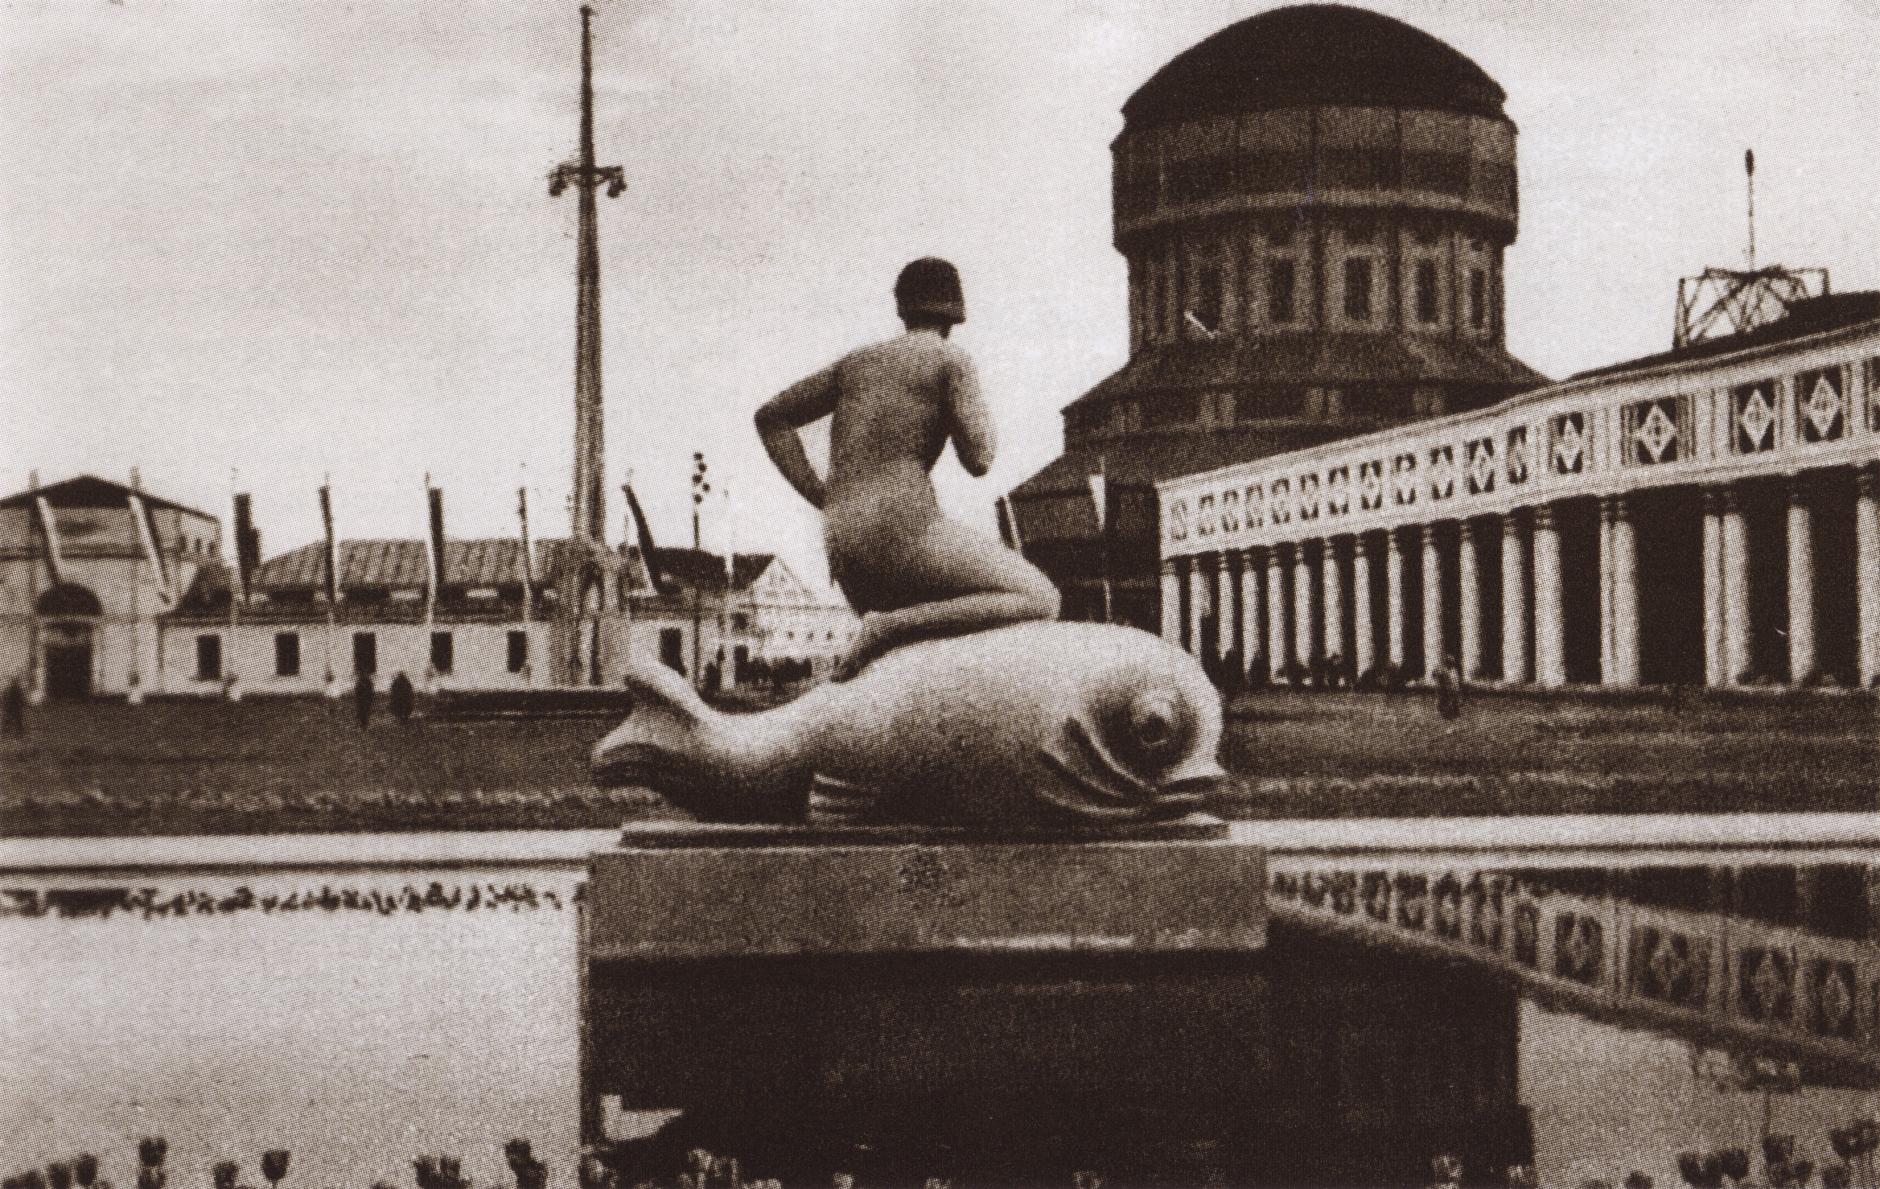 (1929) Teren Powszechnej Wystawy Krajowej. Za fontanną z rzeźbą delfina widoczna jest Wieża Górnośląska.